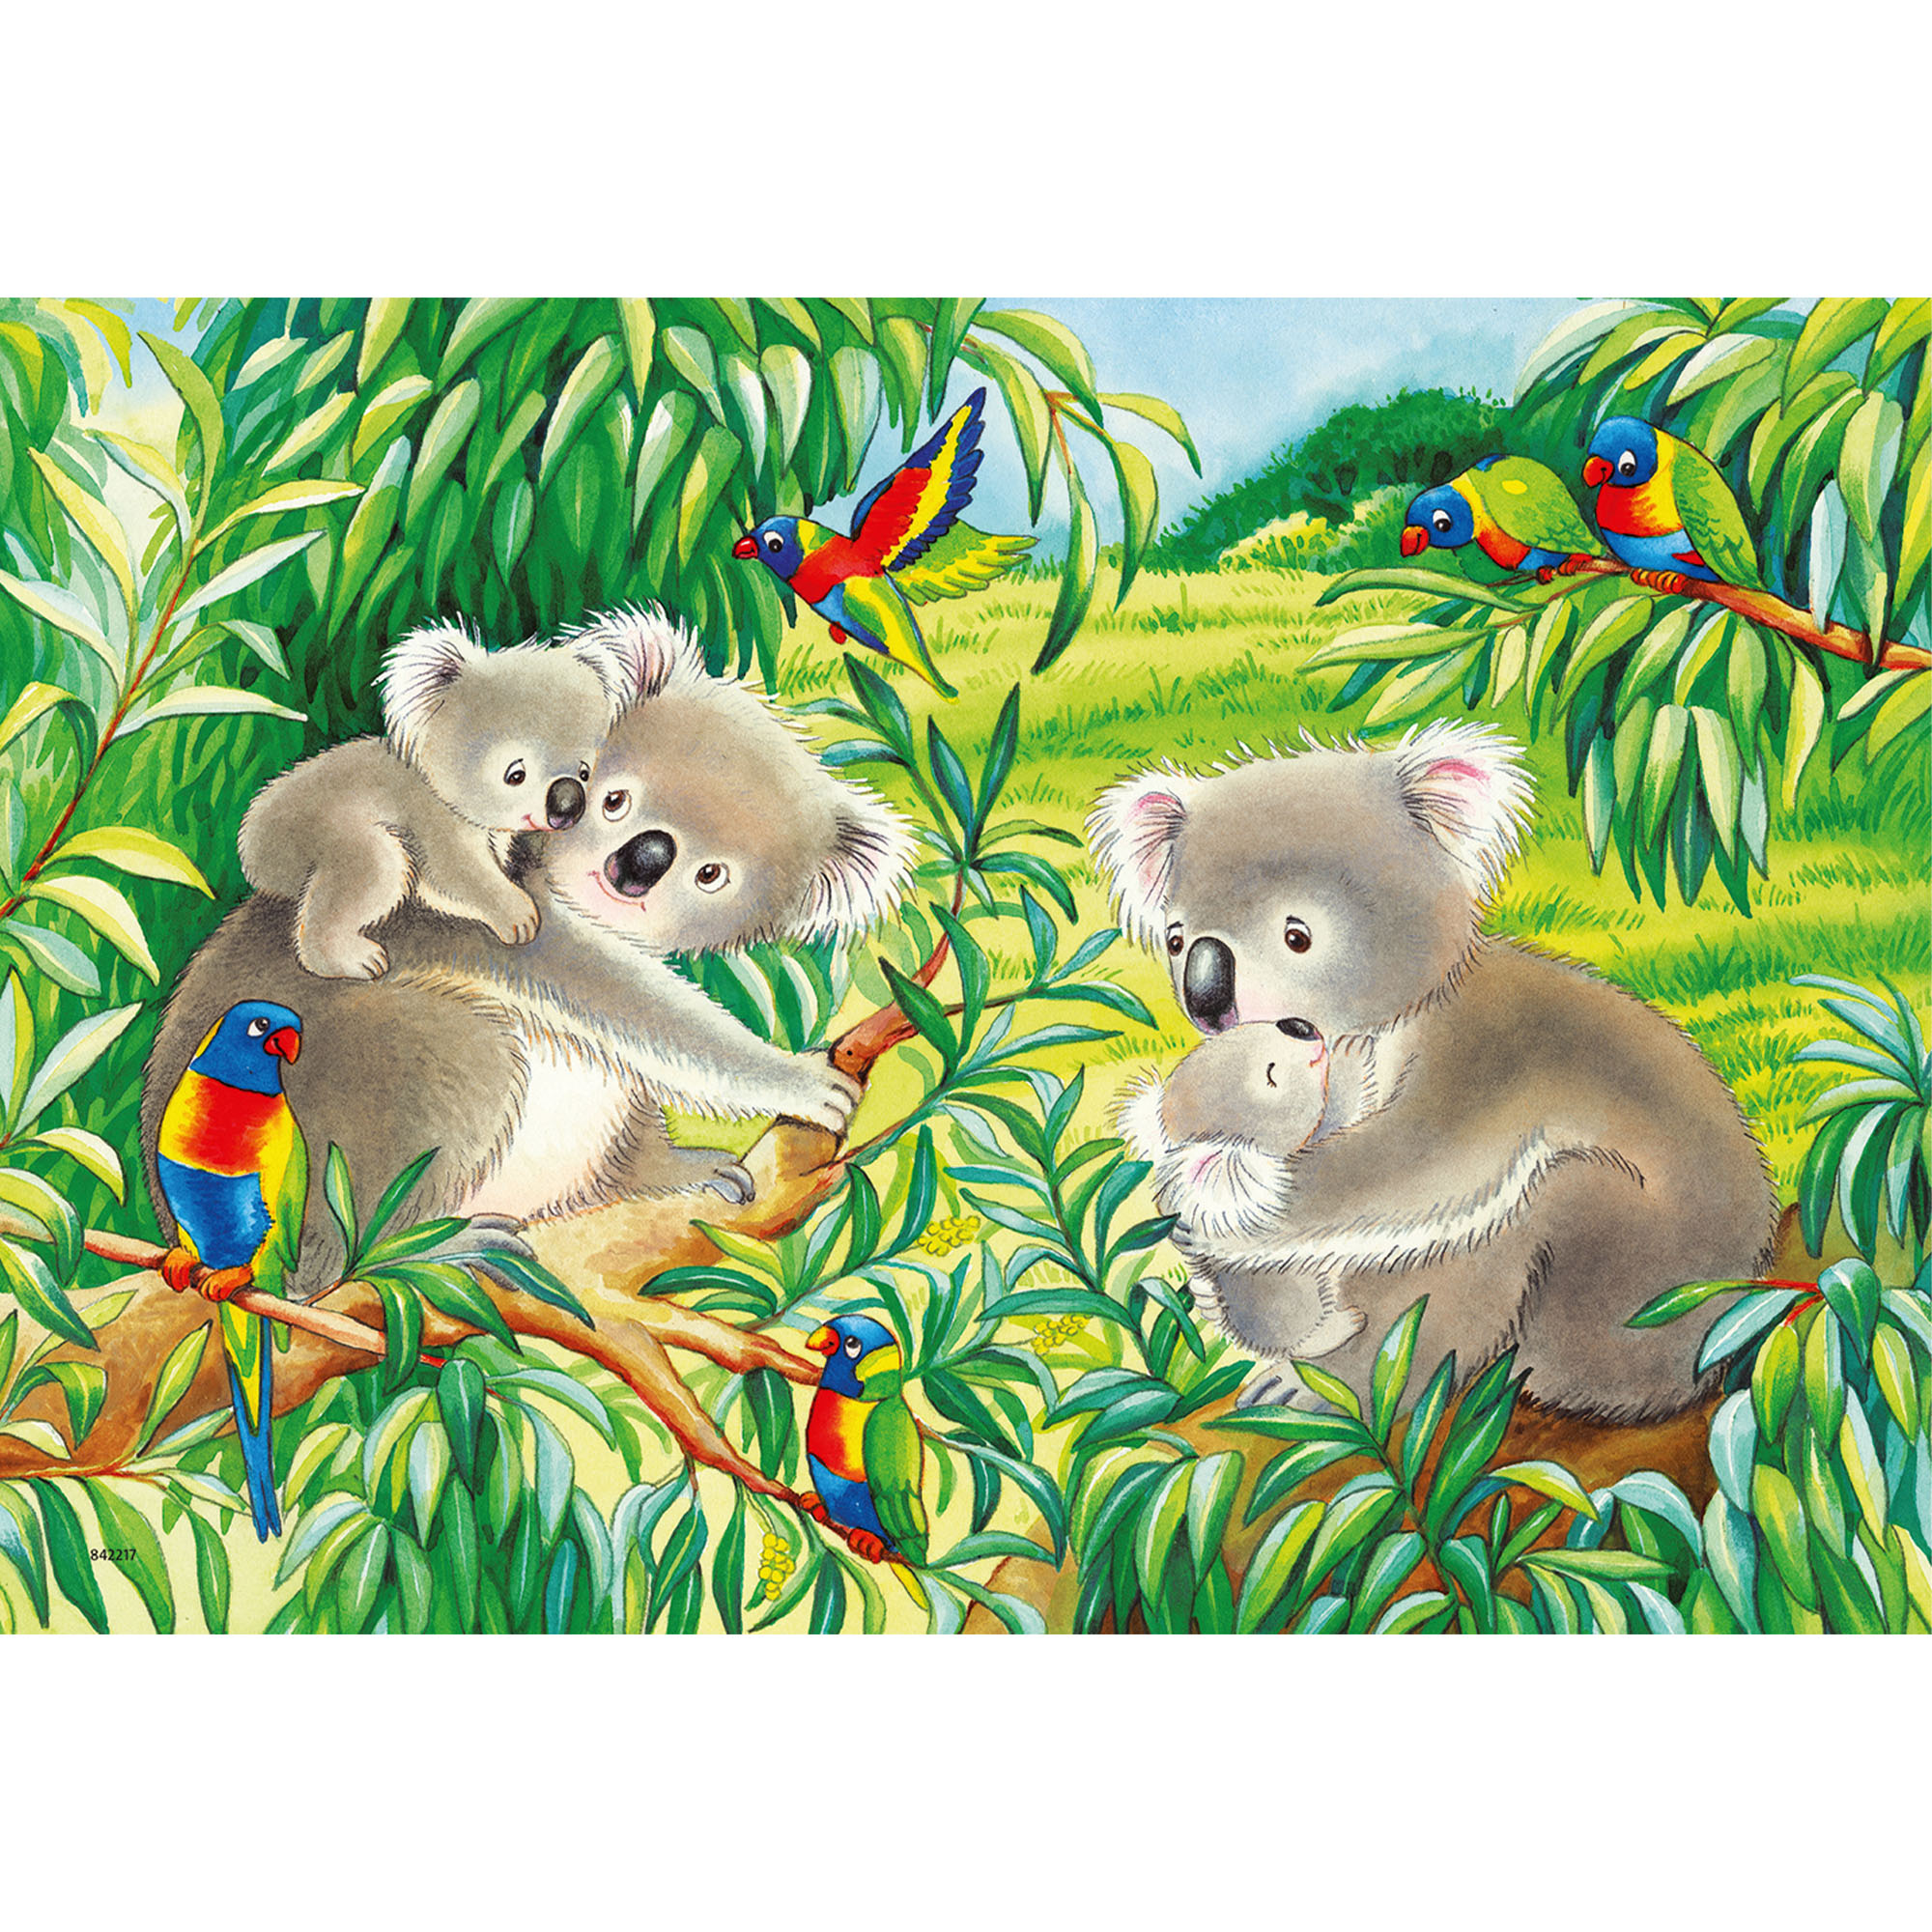 Ravensburger Puzzle 2x24 pezzi 07820 - Dolci Koala e Panda, , large